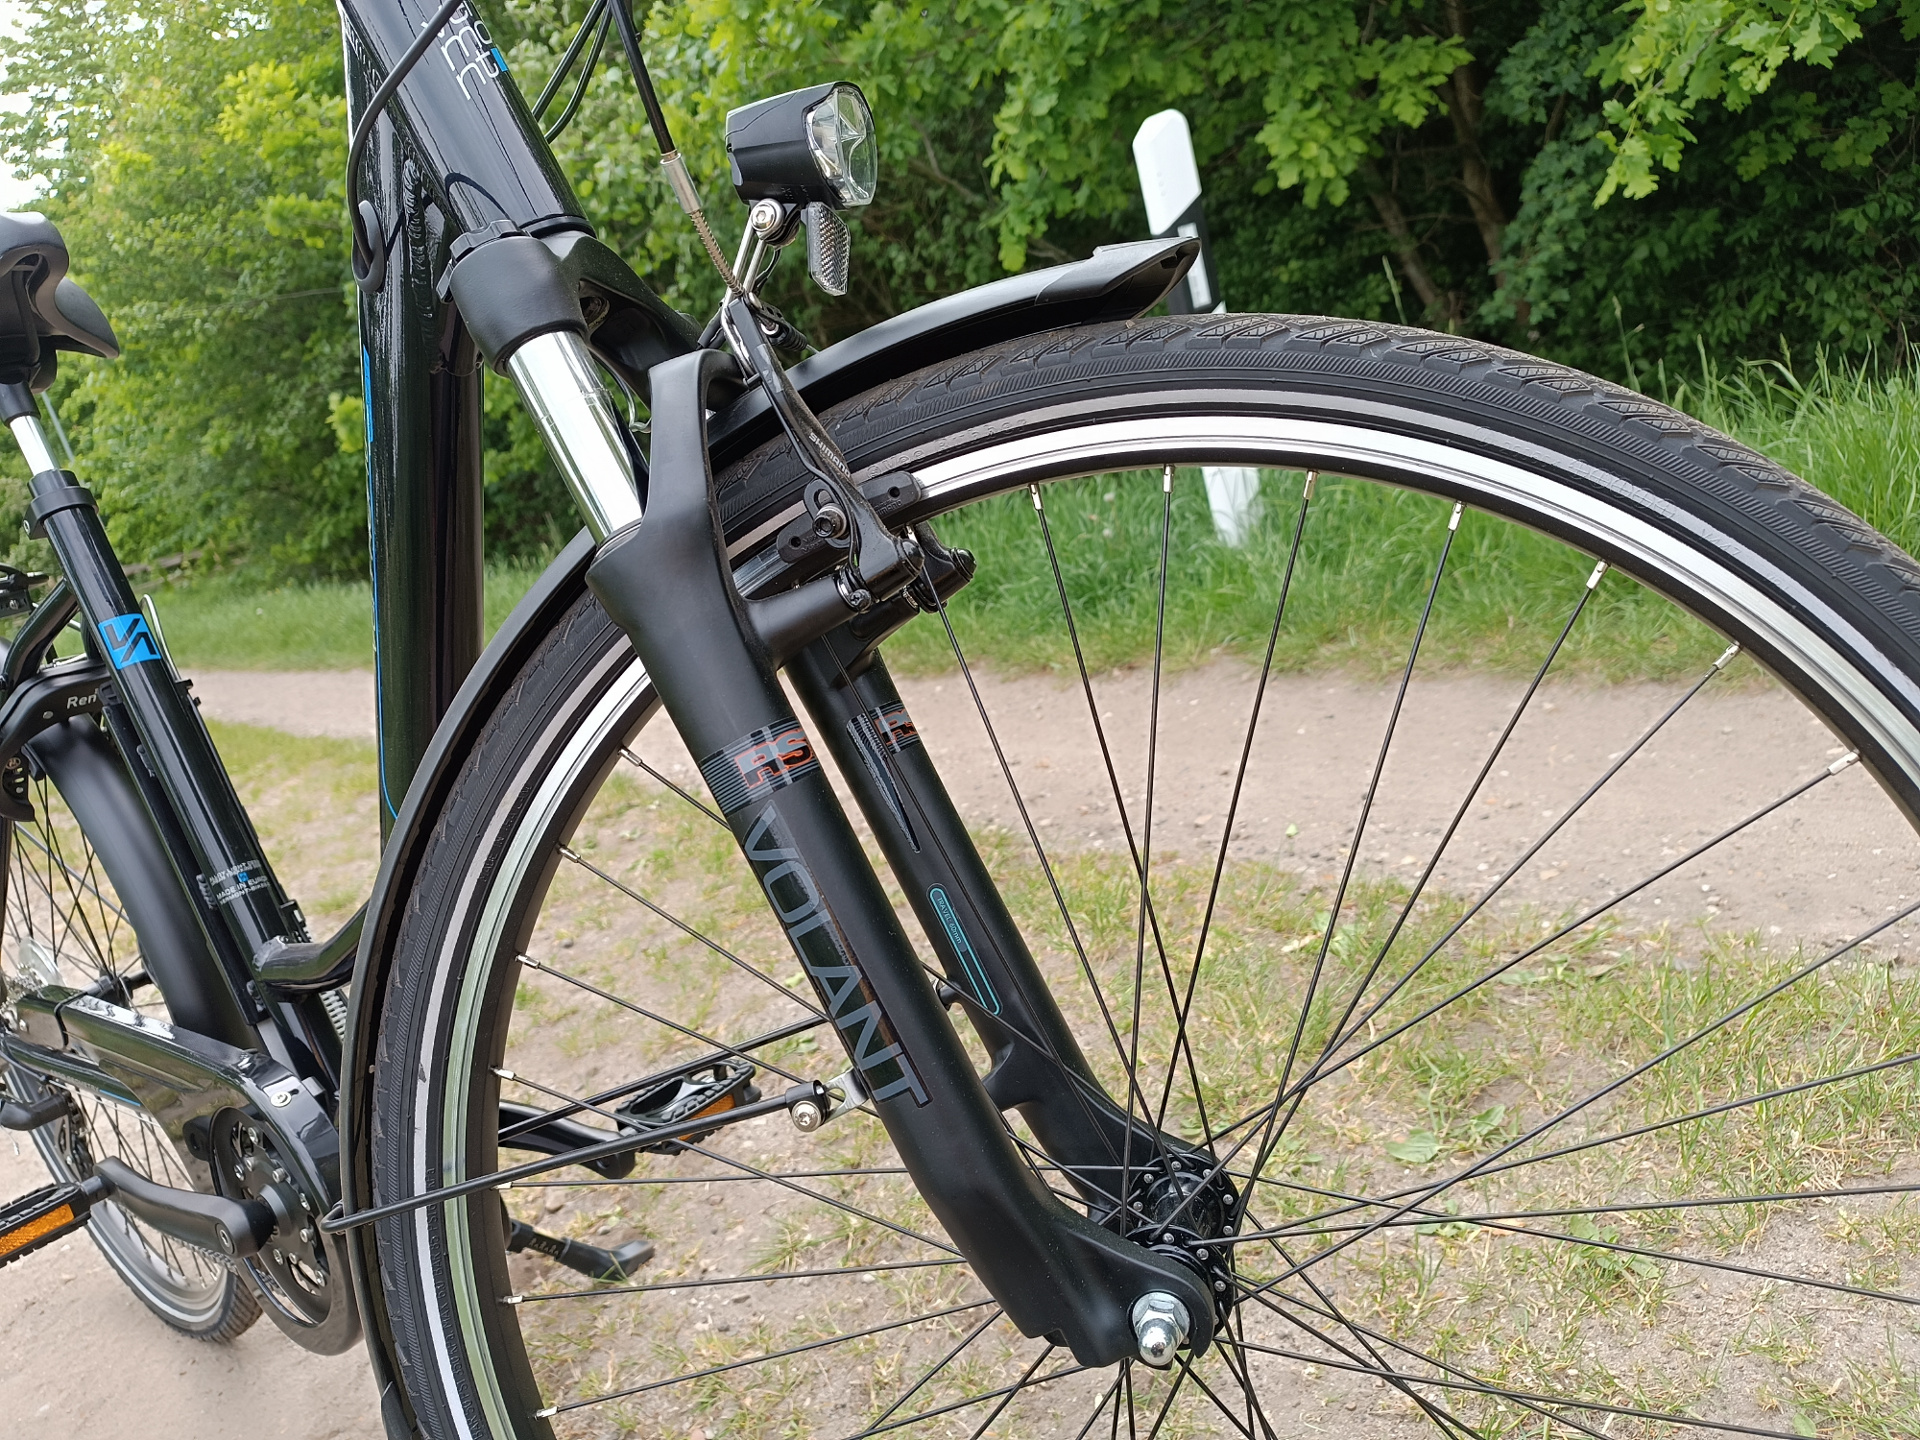 Federgabel und Reifen gefallen im E-Bike Test gut